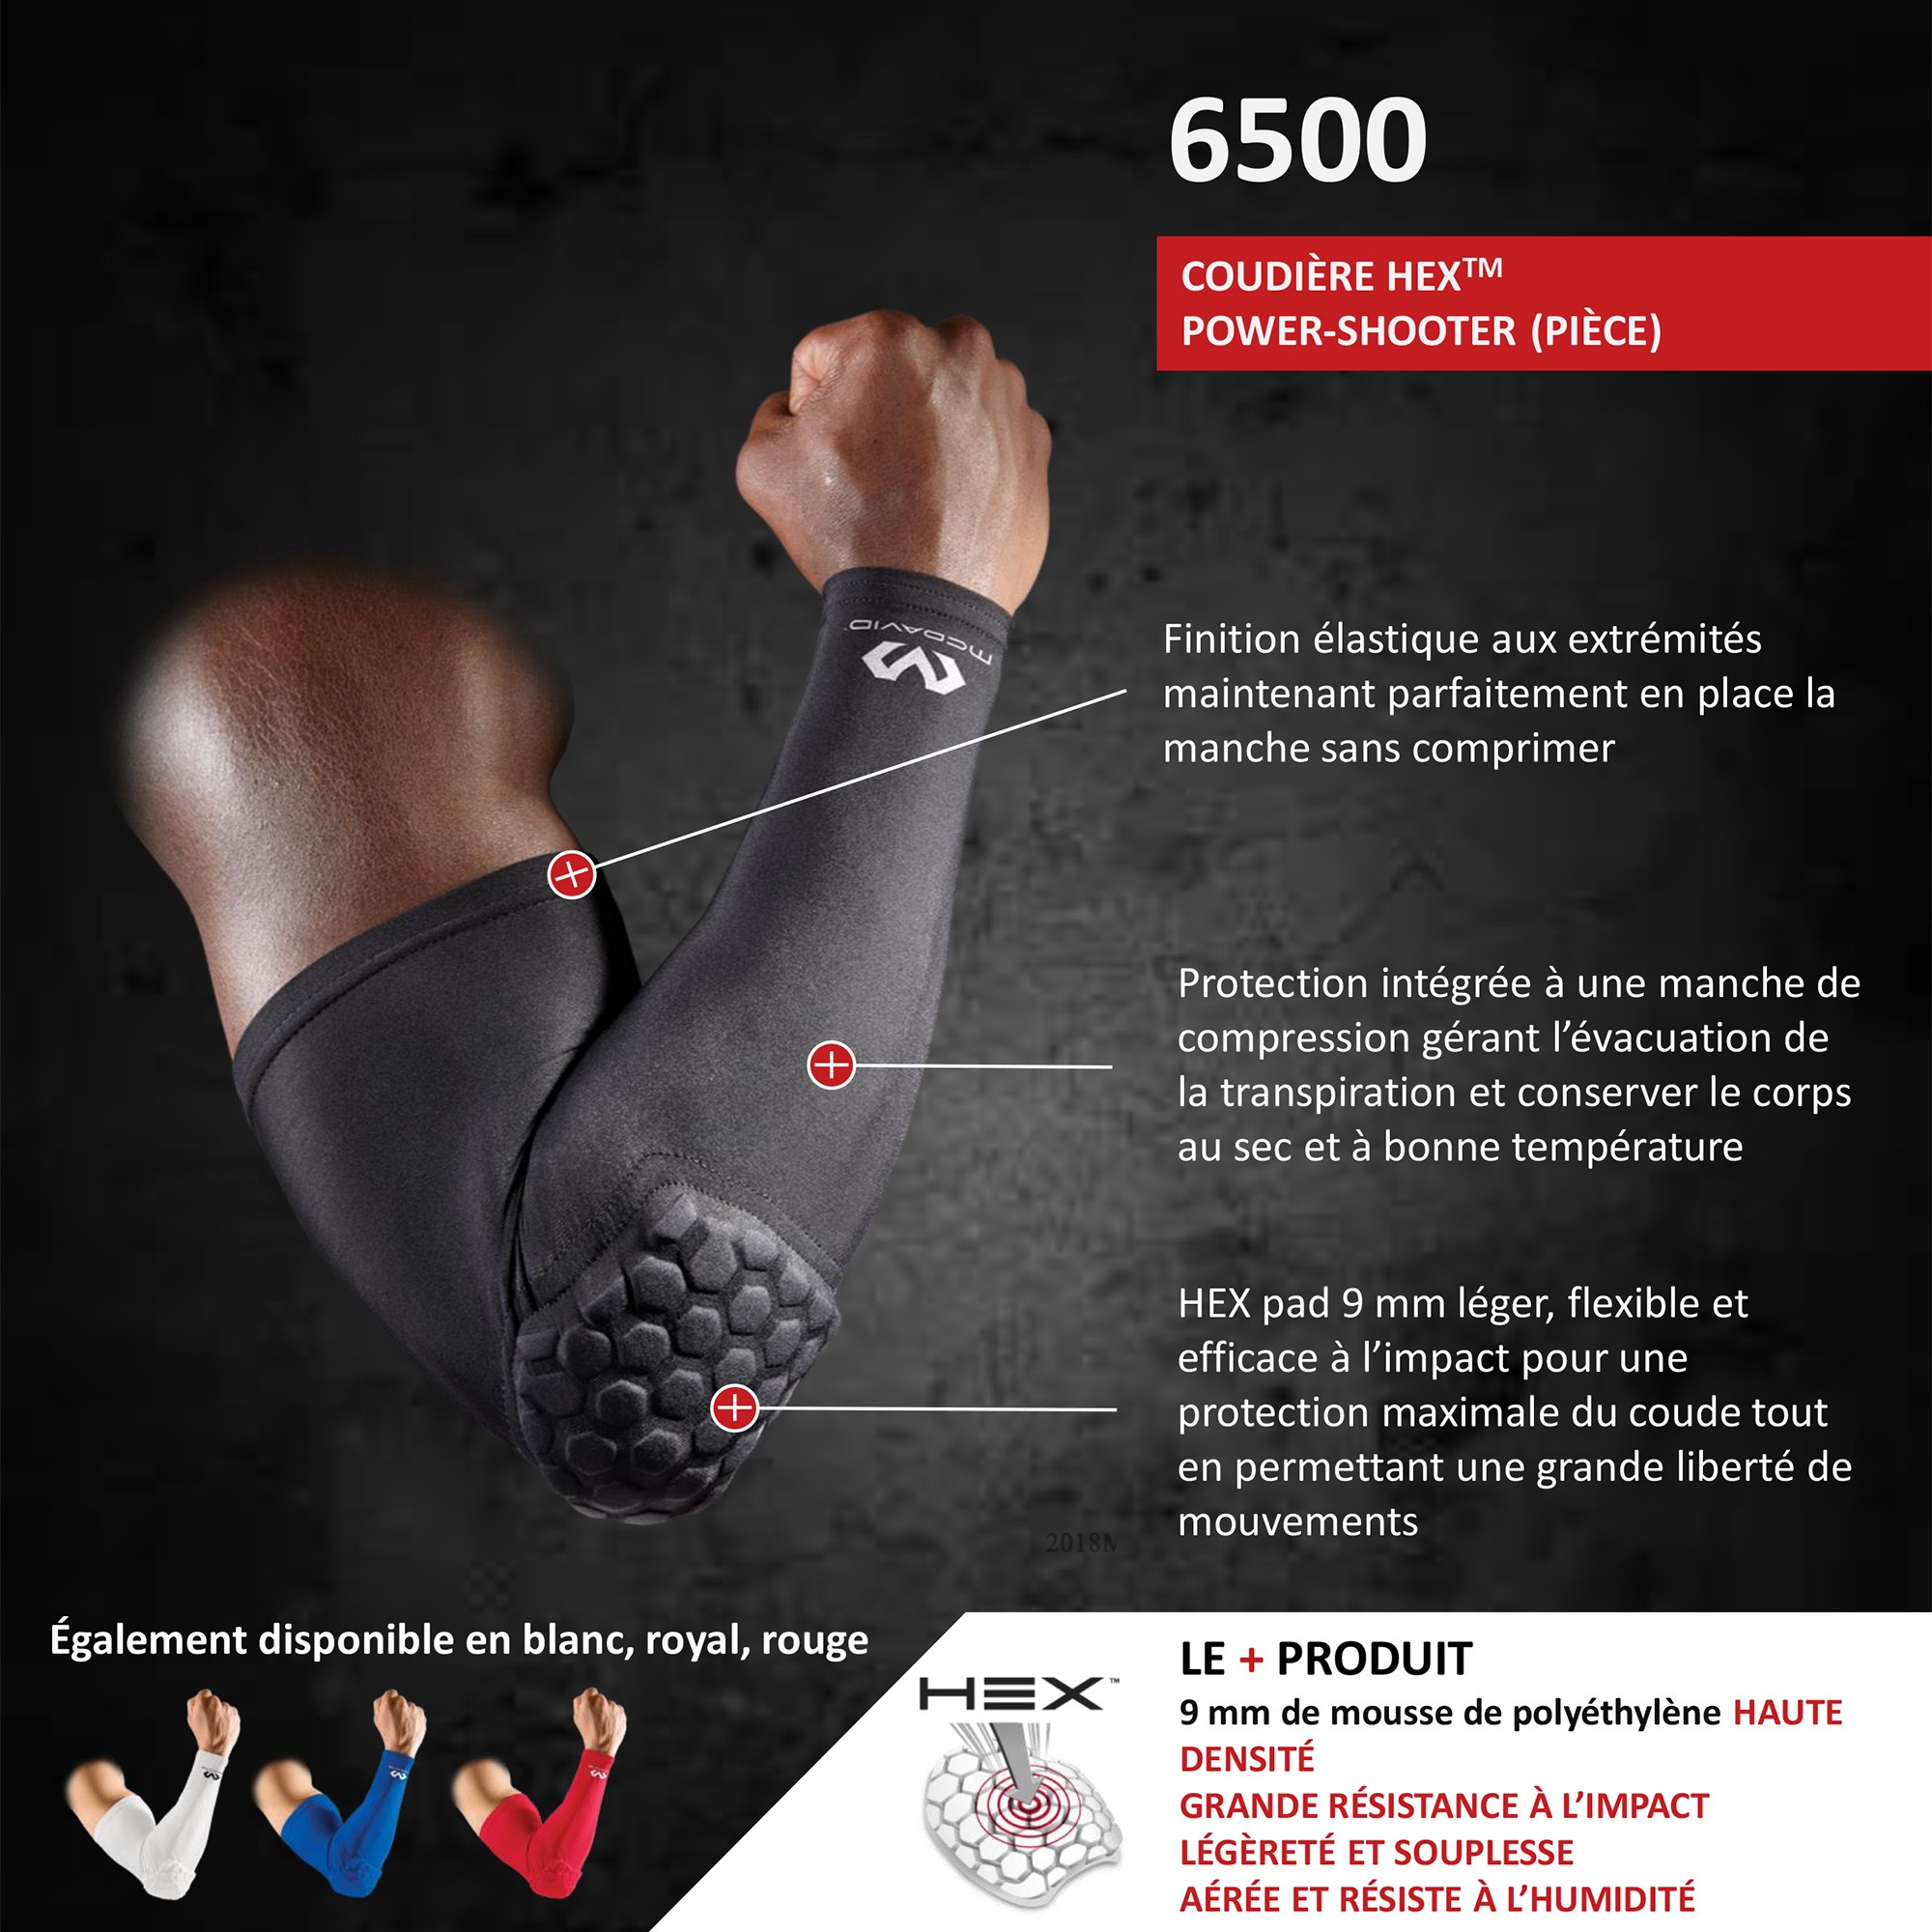 Coquille de protection ajustable Adidas pour sports de combat - S